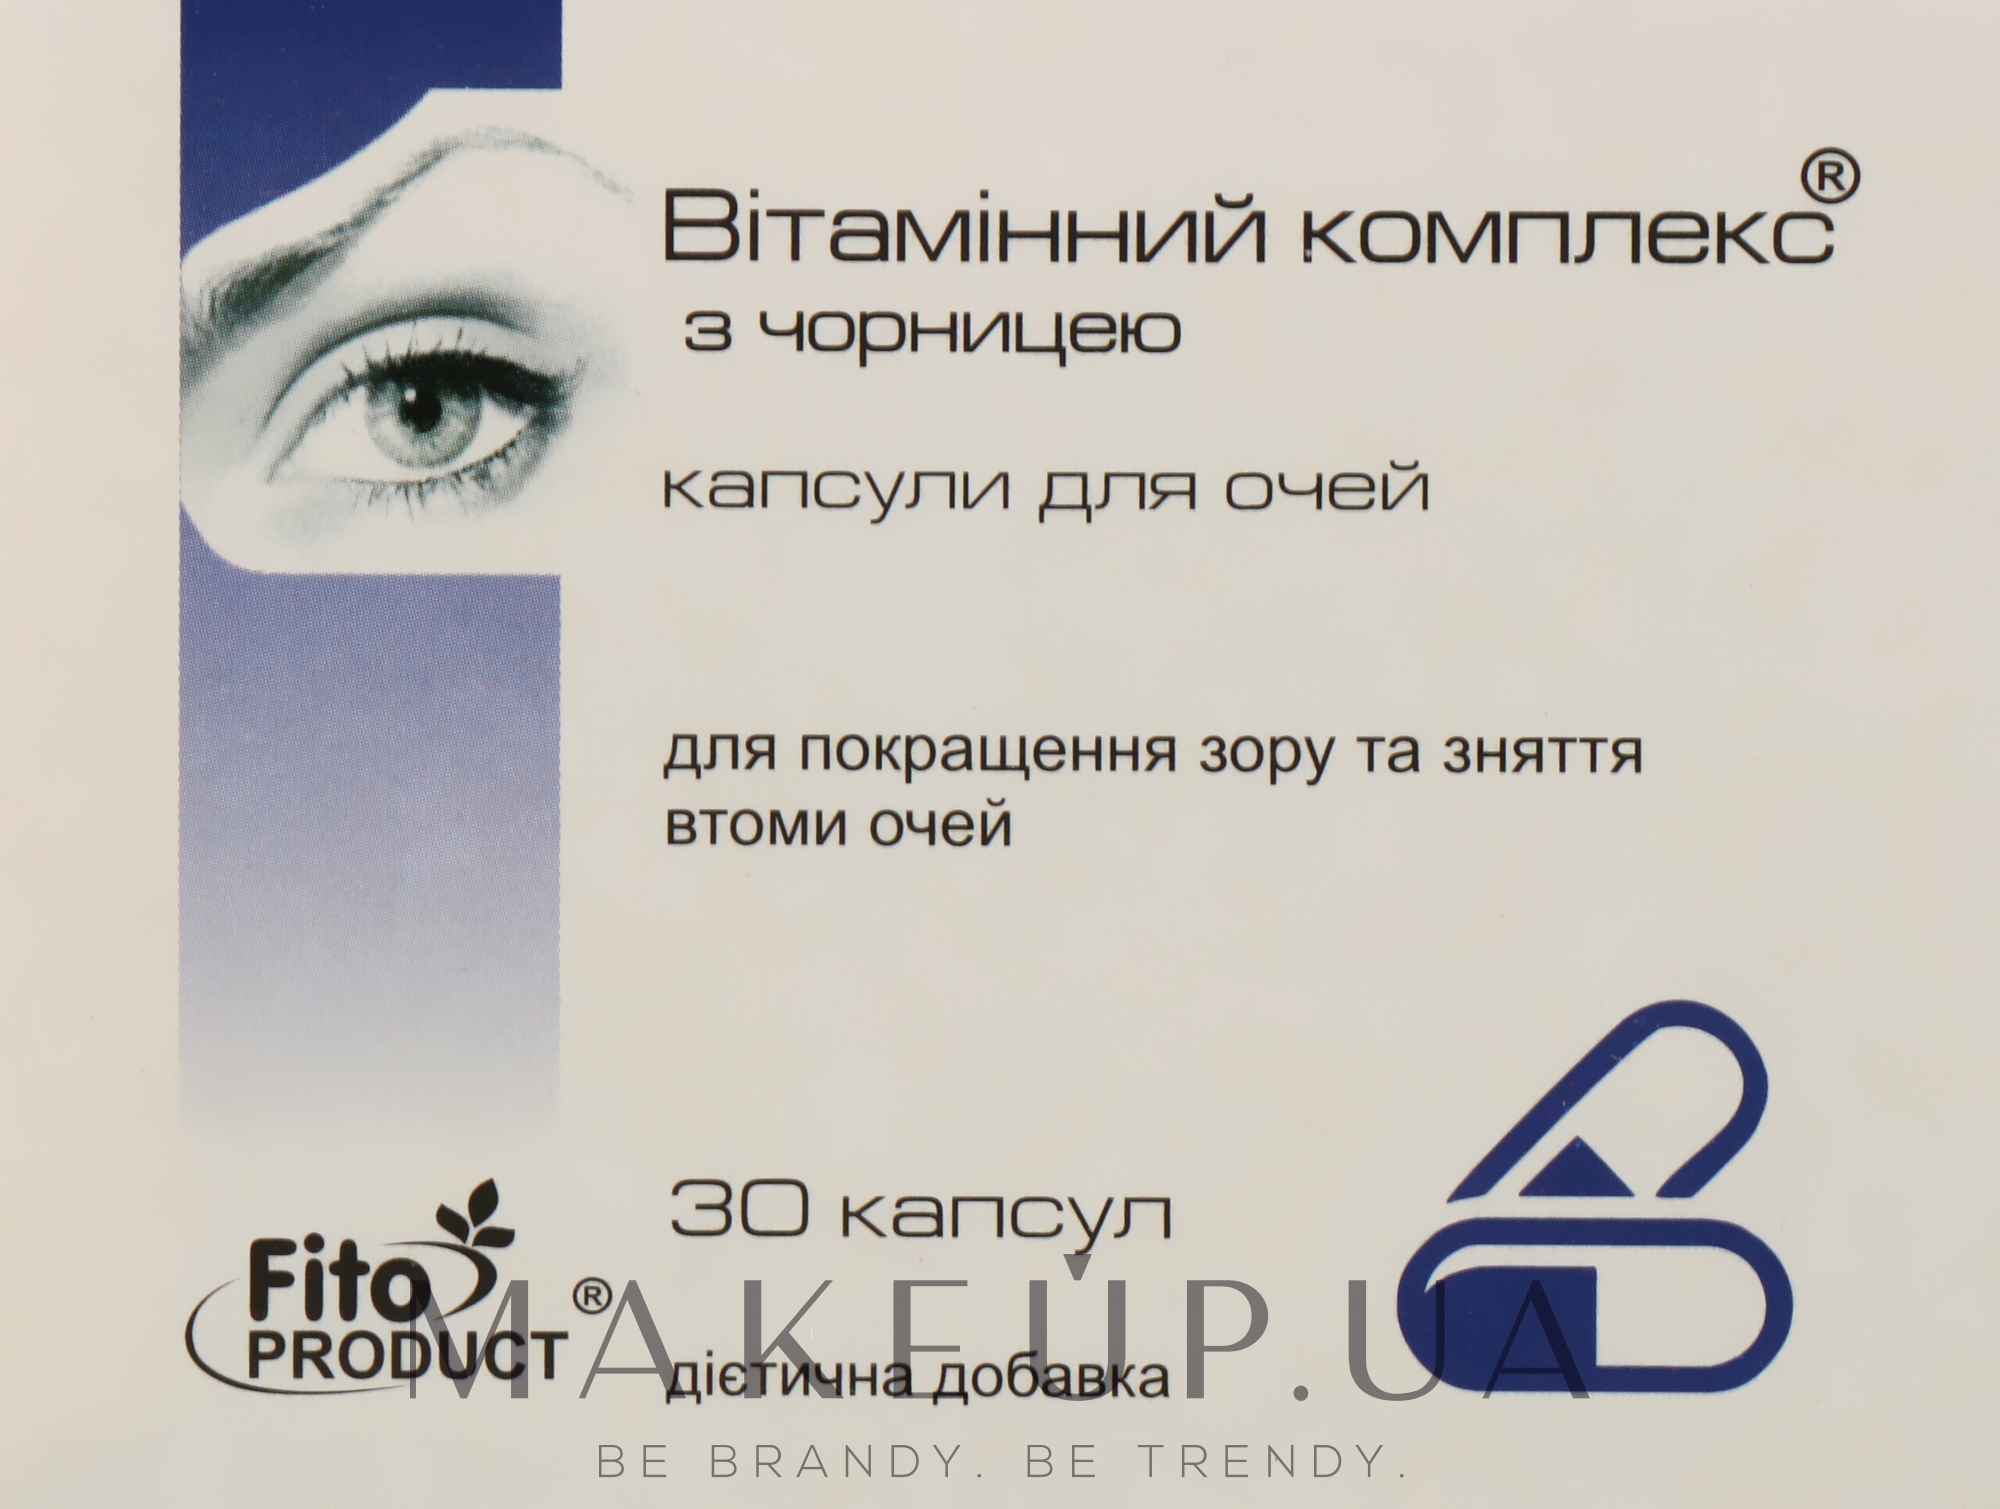 Дієтична добавка "Вітамінний комплекс для очей, для покращення зору й зняття втоми очей", 30 капсул - Fito Product — фото 30шт